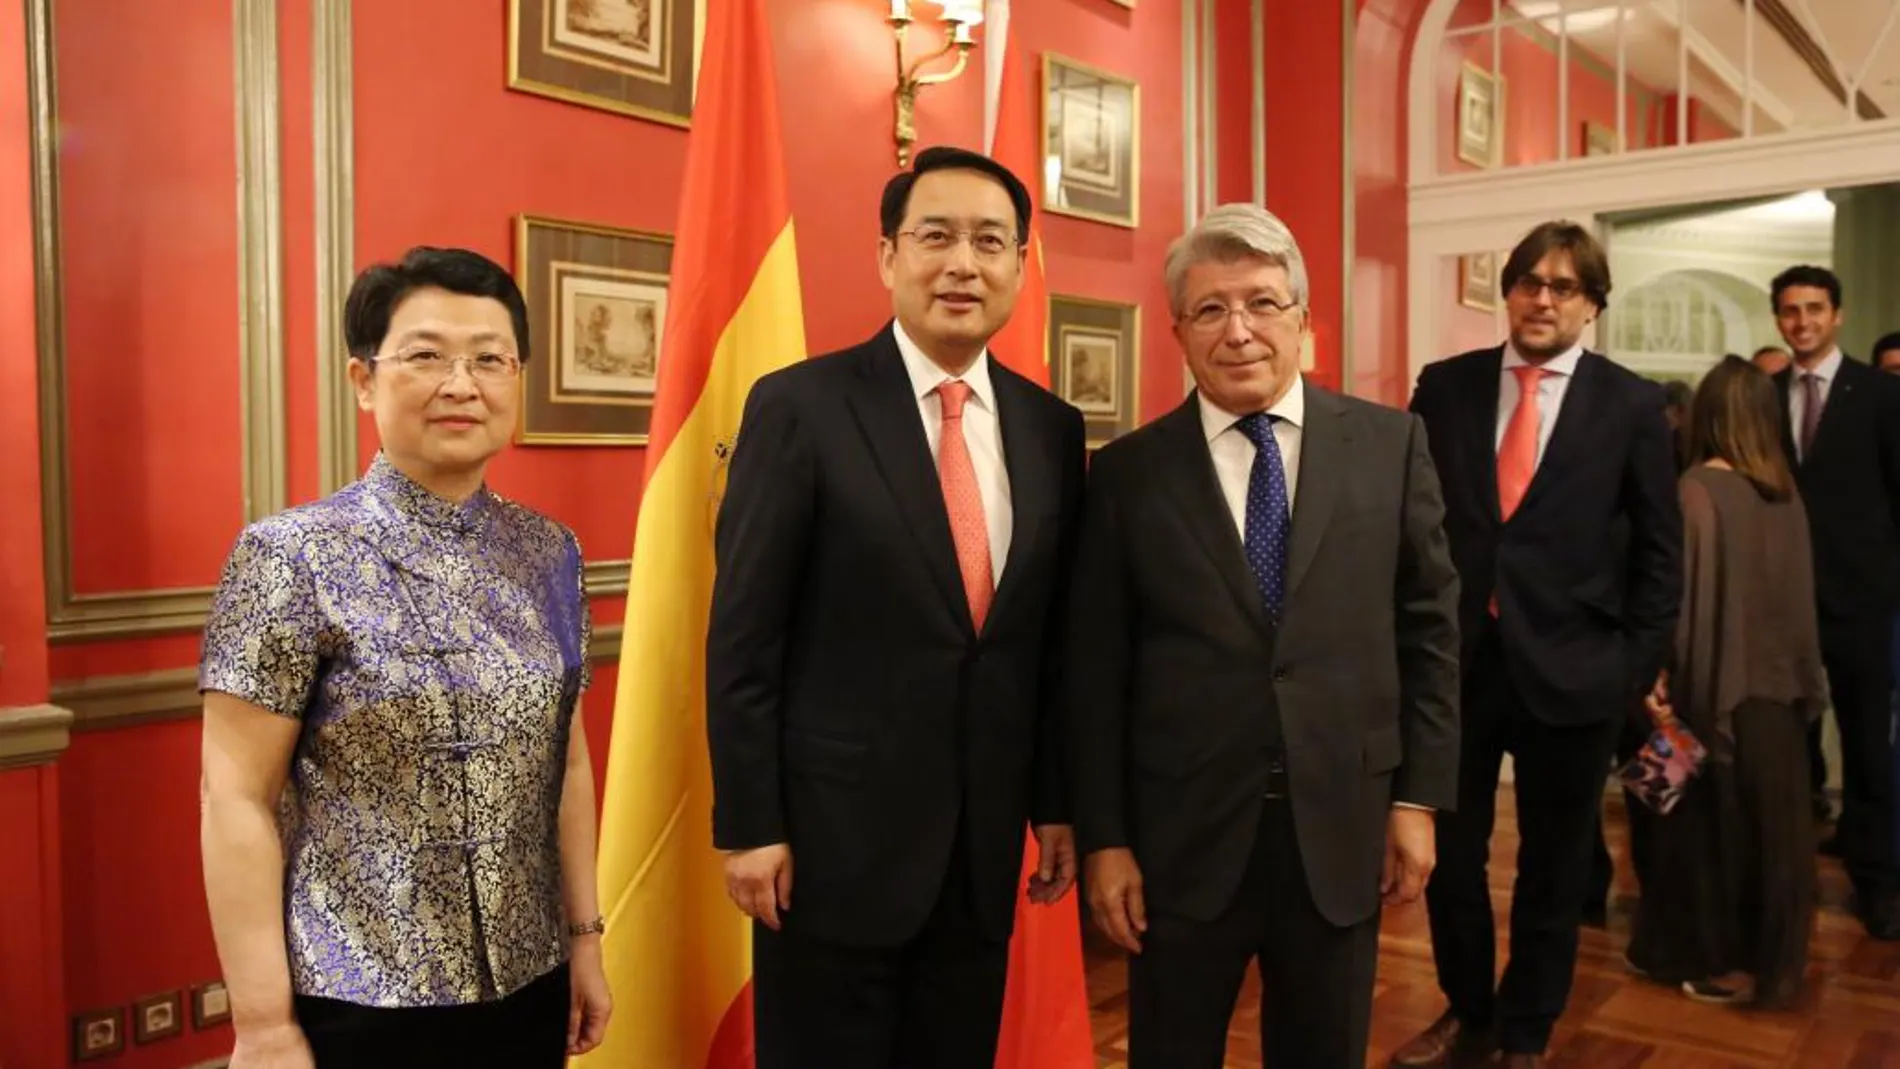 El embajador chino Lyu Fan (en el centro); su esposa Huang Caizhen (a la izquierda) y el presidente del Atlético de Madrid, Enrique Cerezo (a la derecha)